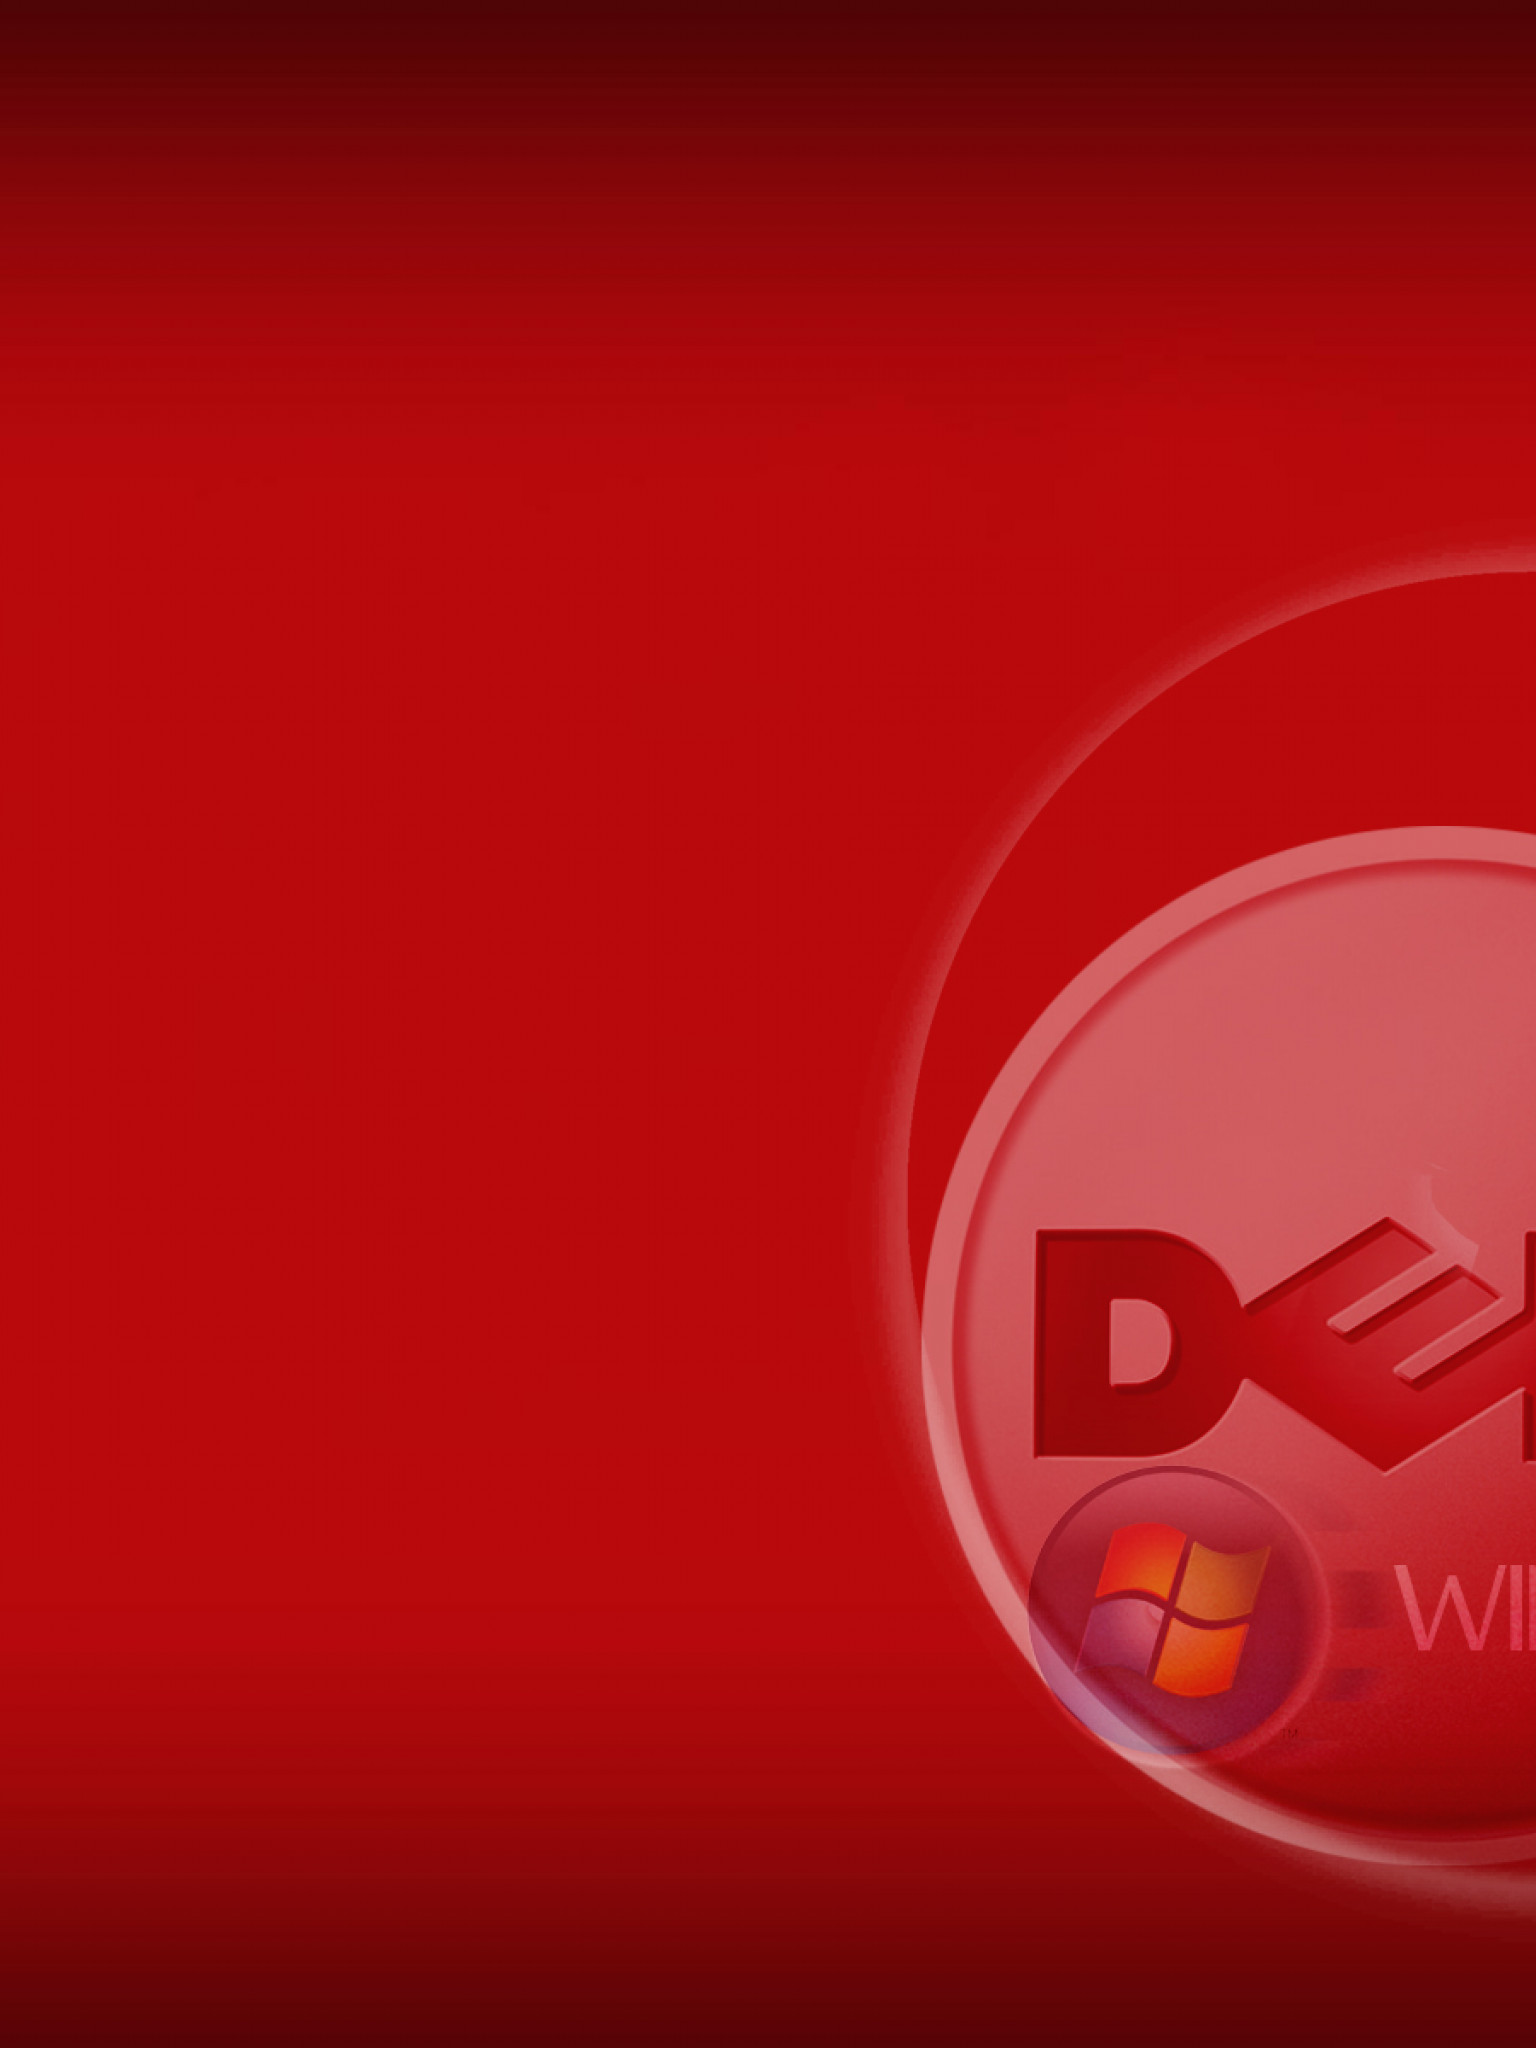 Windows7 for DeLL